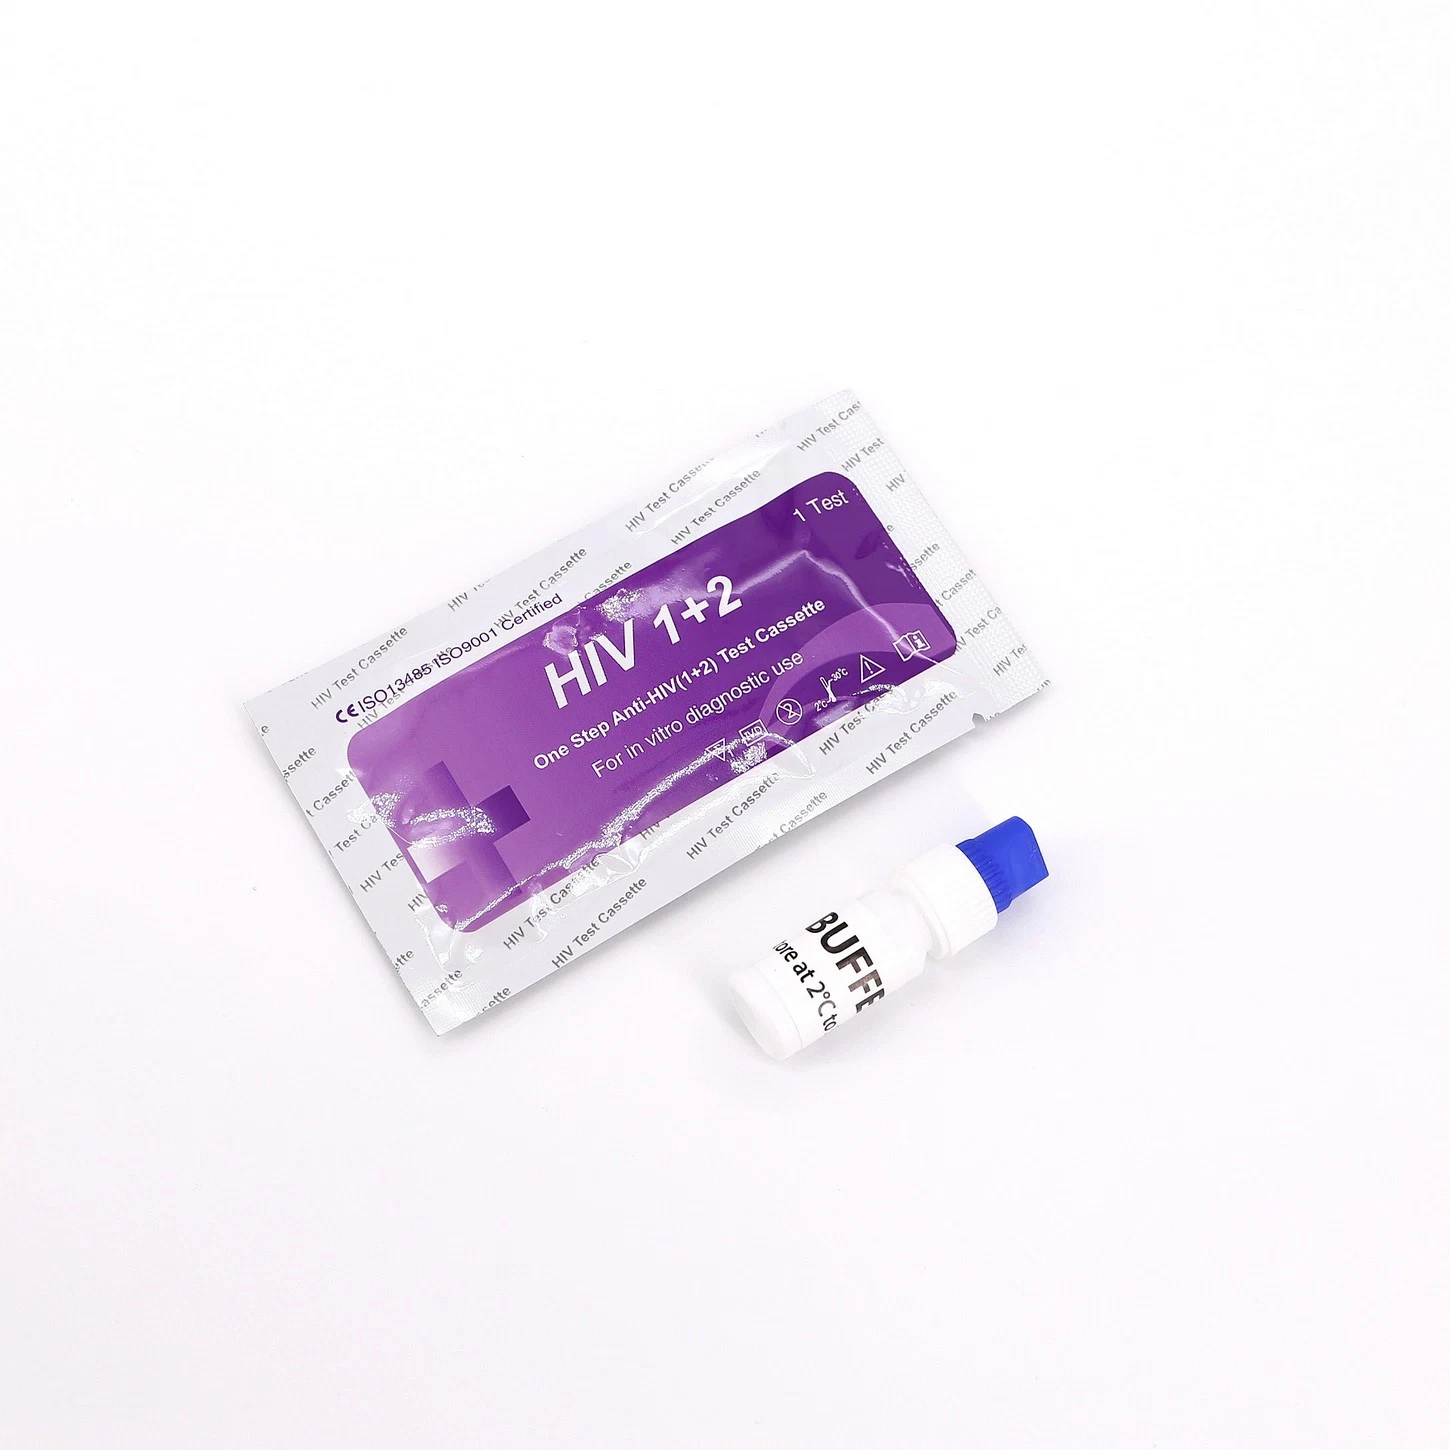 Medical Rapid Anticorpo Diagnóstico/ Antigent uma etapa de teste de HIV Kit Combo reagente para Síndrome da Imunodeficiência Adquirida